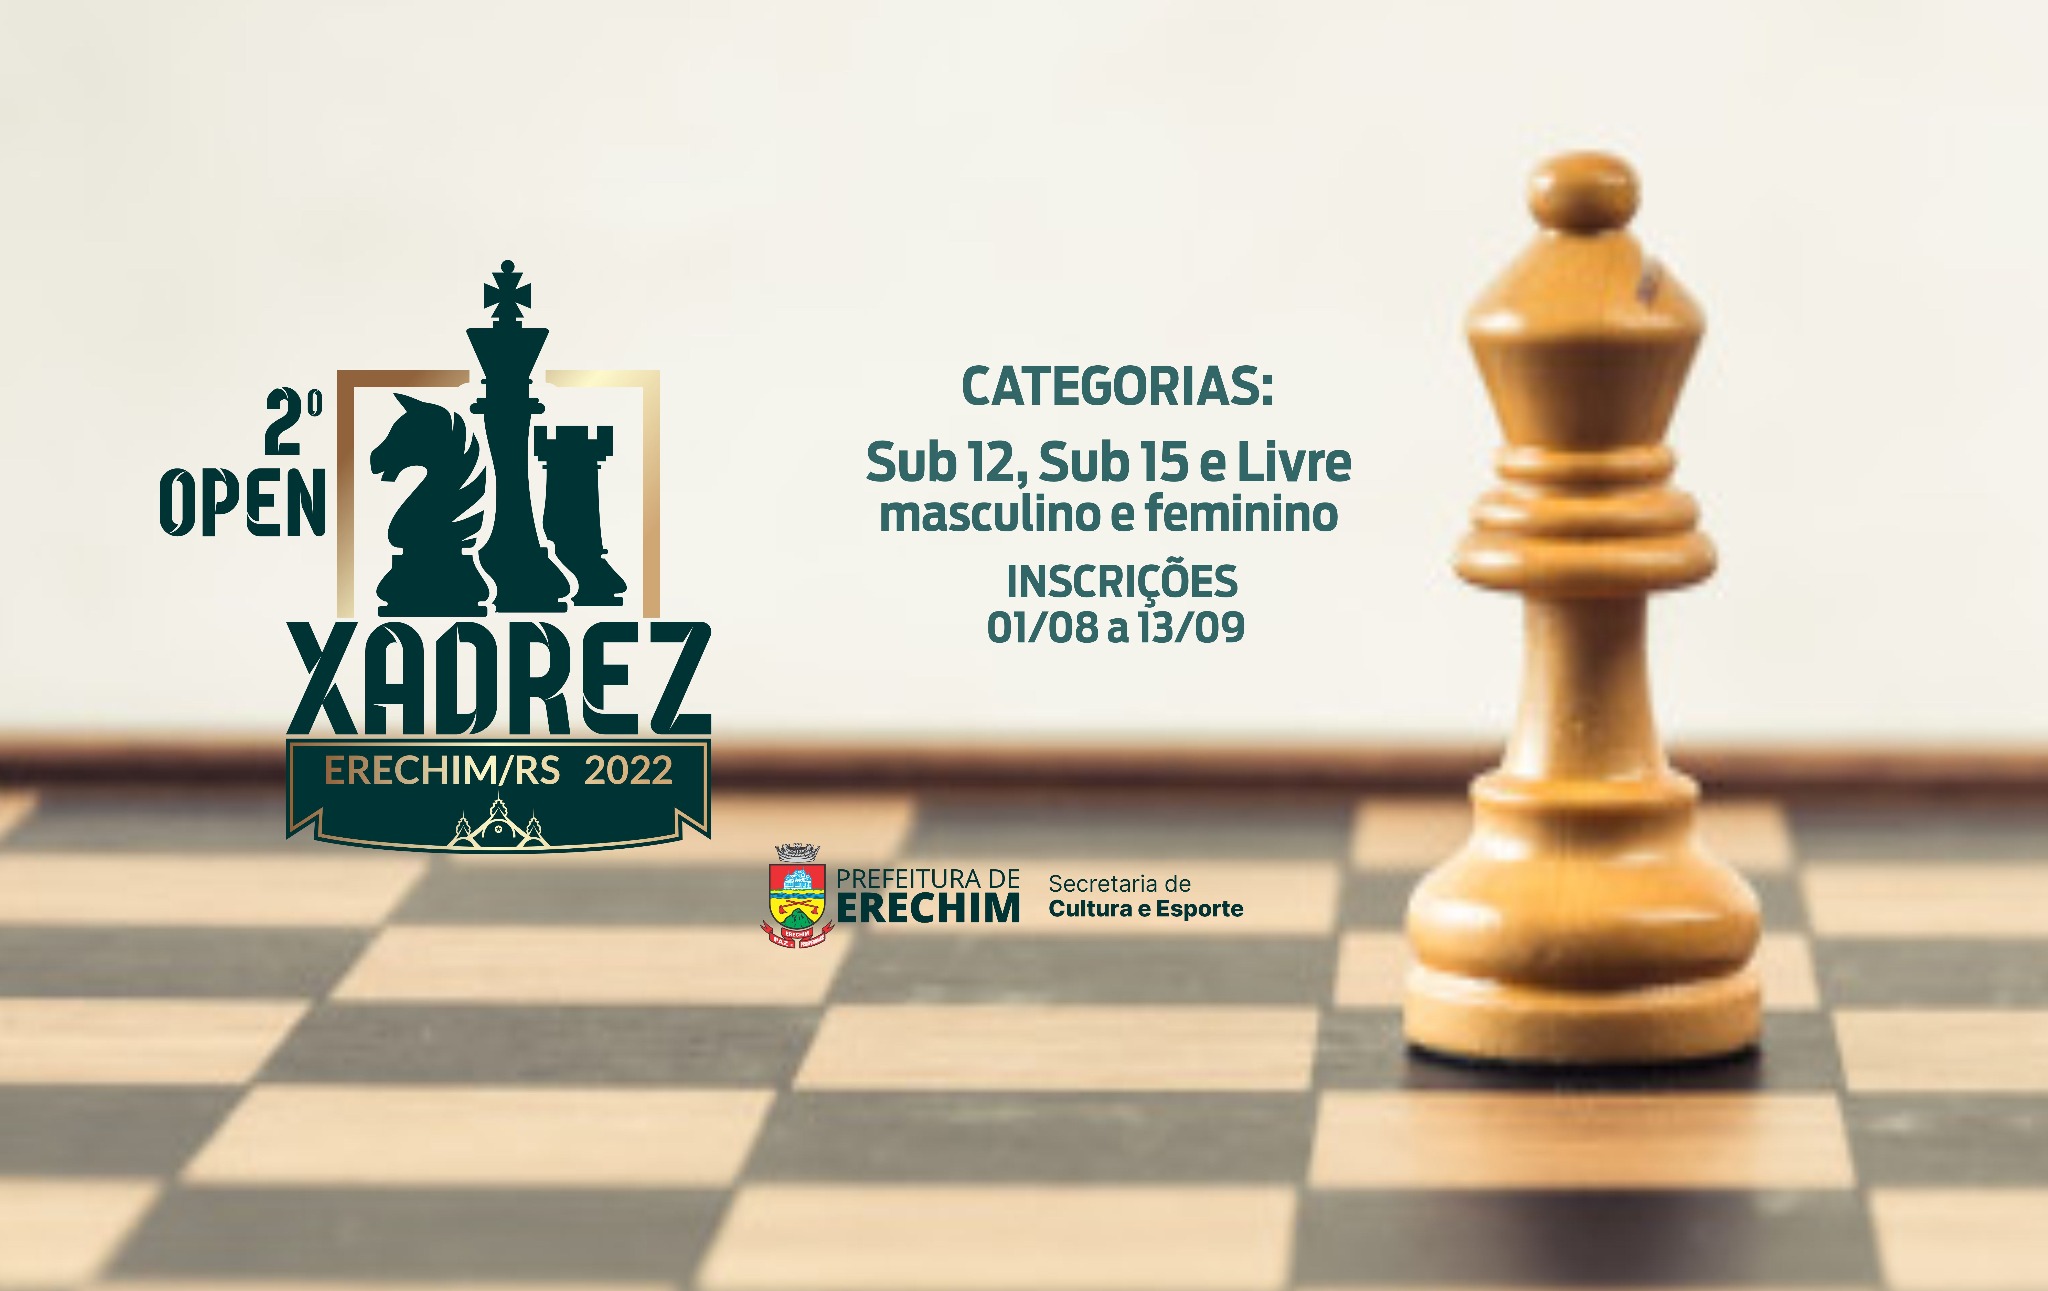 Sábado acontece o II Campeonato Caeté Multimarcas de Xadrez